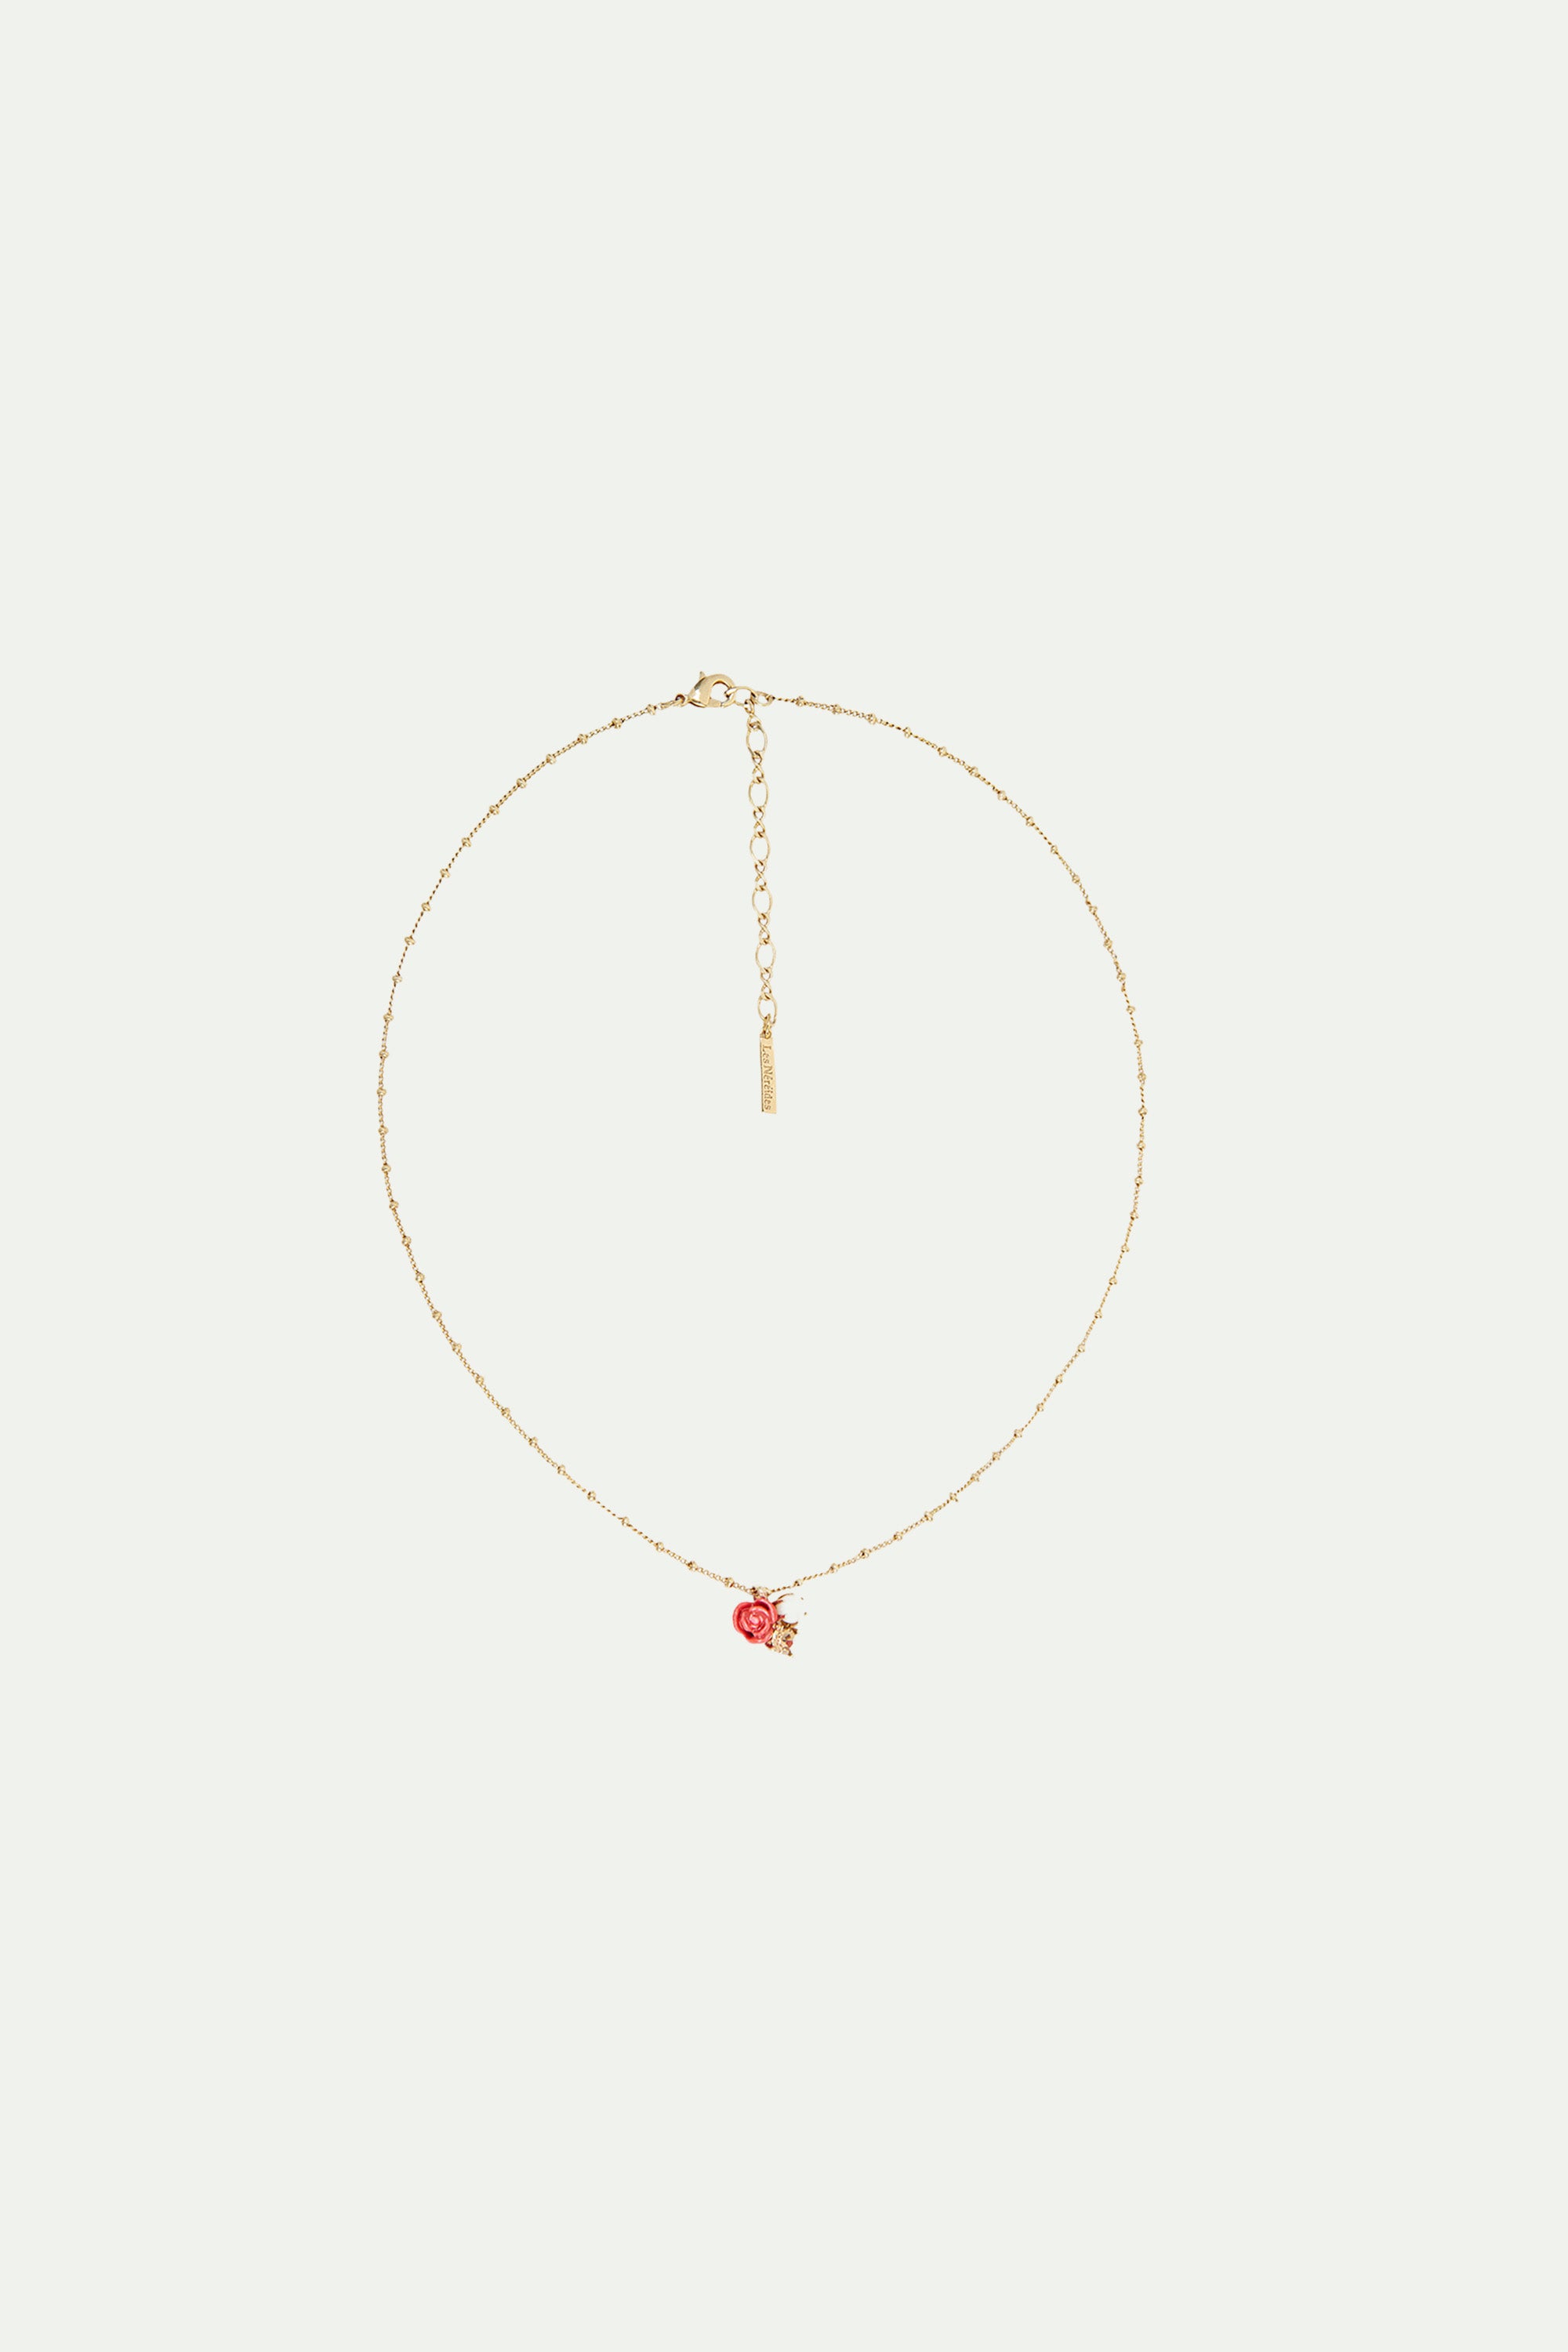 Collier pendentif rose, perle de culture et pierre